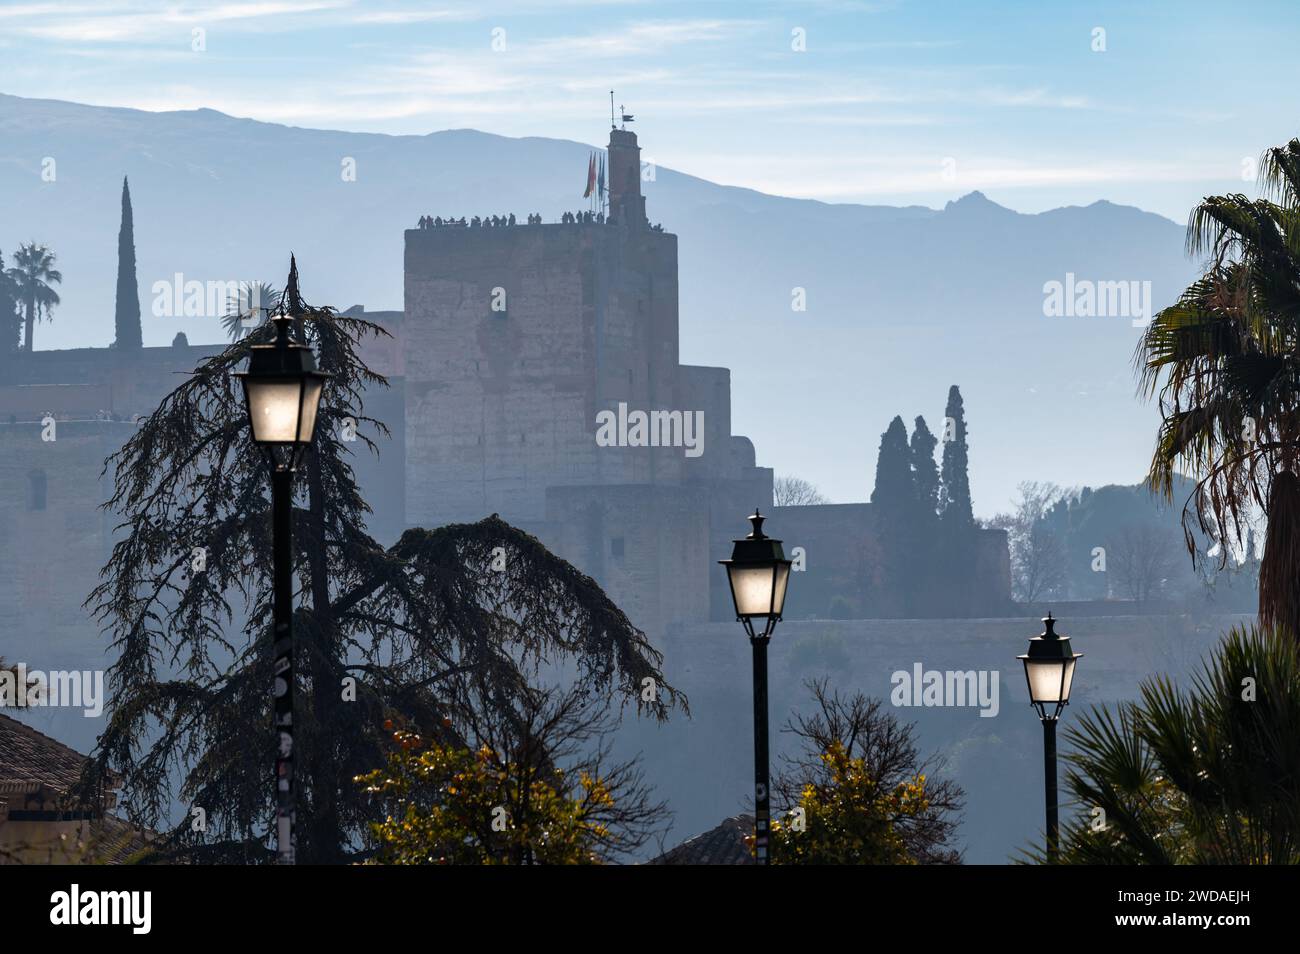 Vista della Torre de la Vela dell'Alhambra (Granada, Spagna) all'alba, con tre lampioni in primo piano Foto Stock